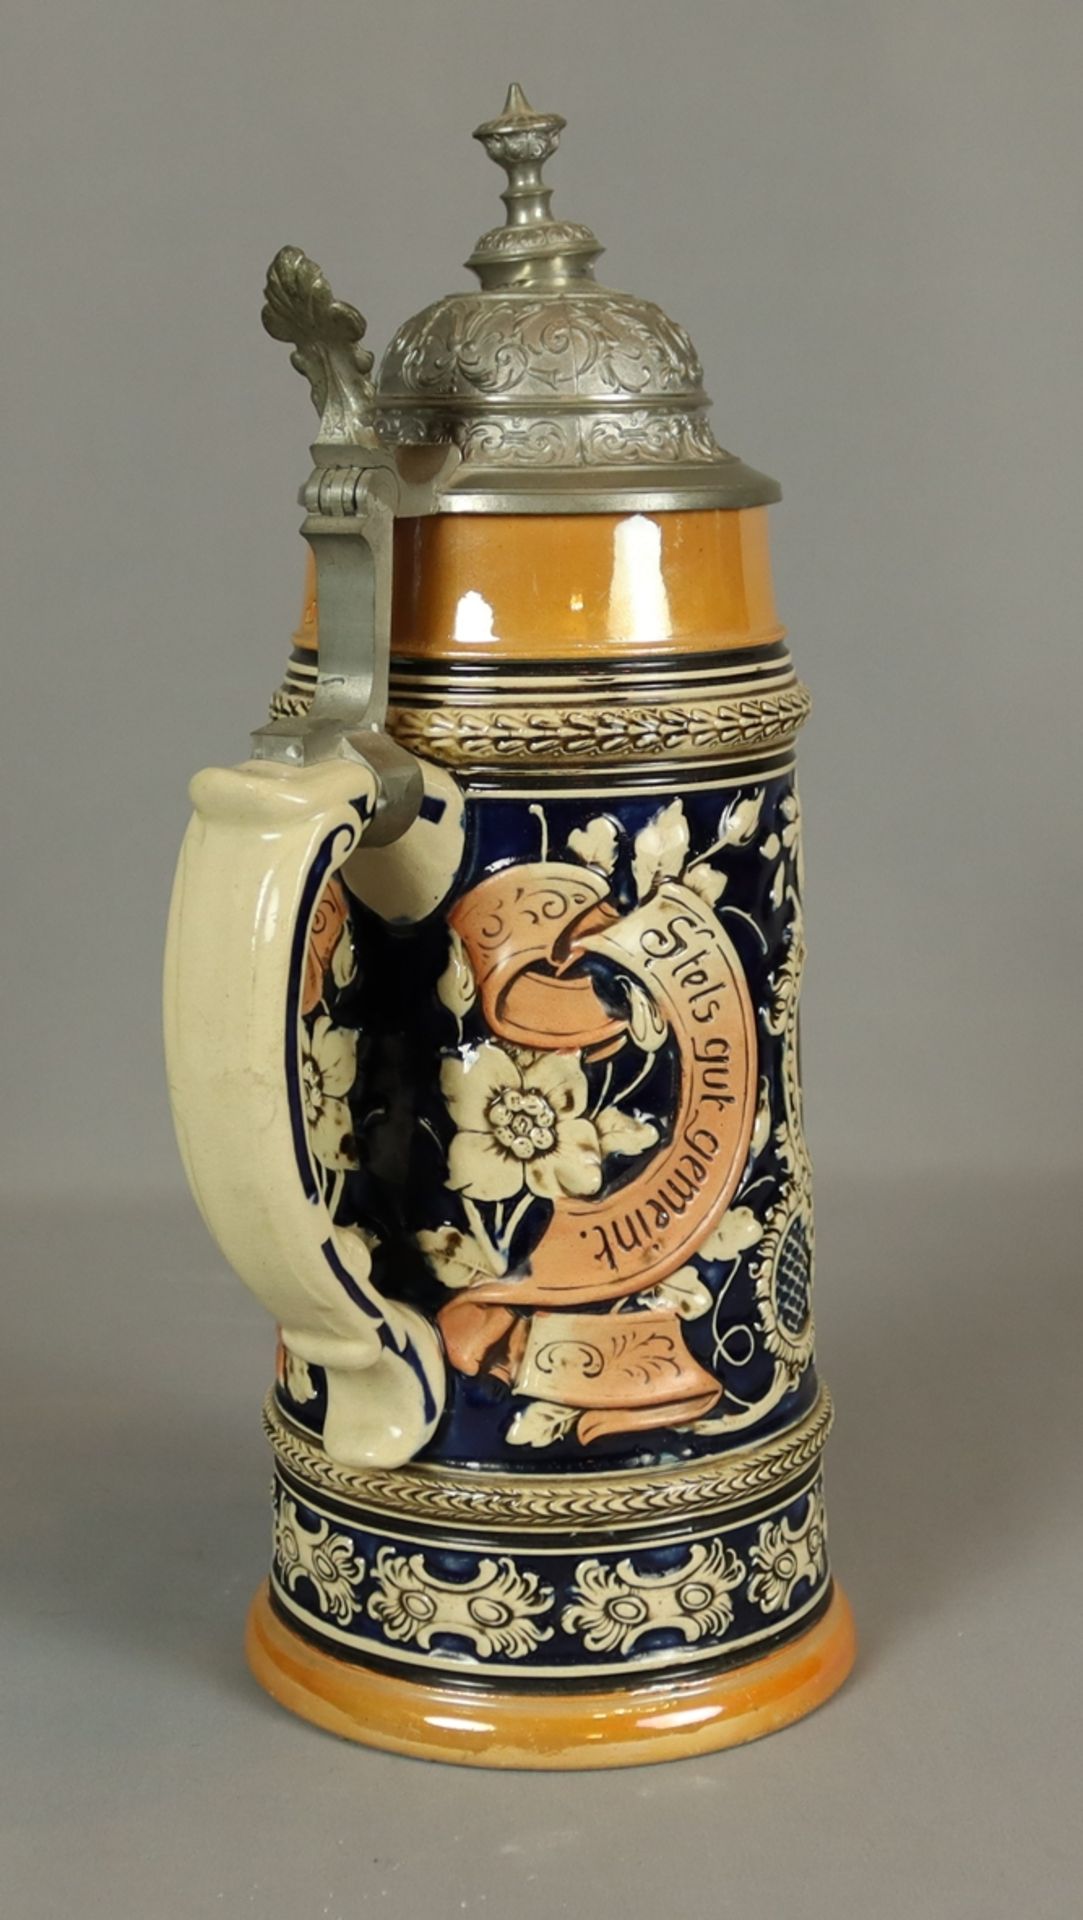 Großer Bierkrug um 1900, Majolika ohne Marke, heller Scherben, farblich gestaltet, Korpus facettier - Image 2 of 2